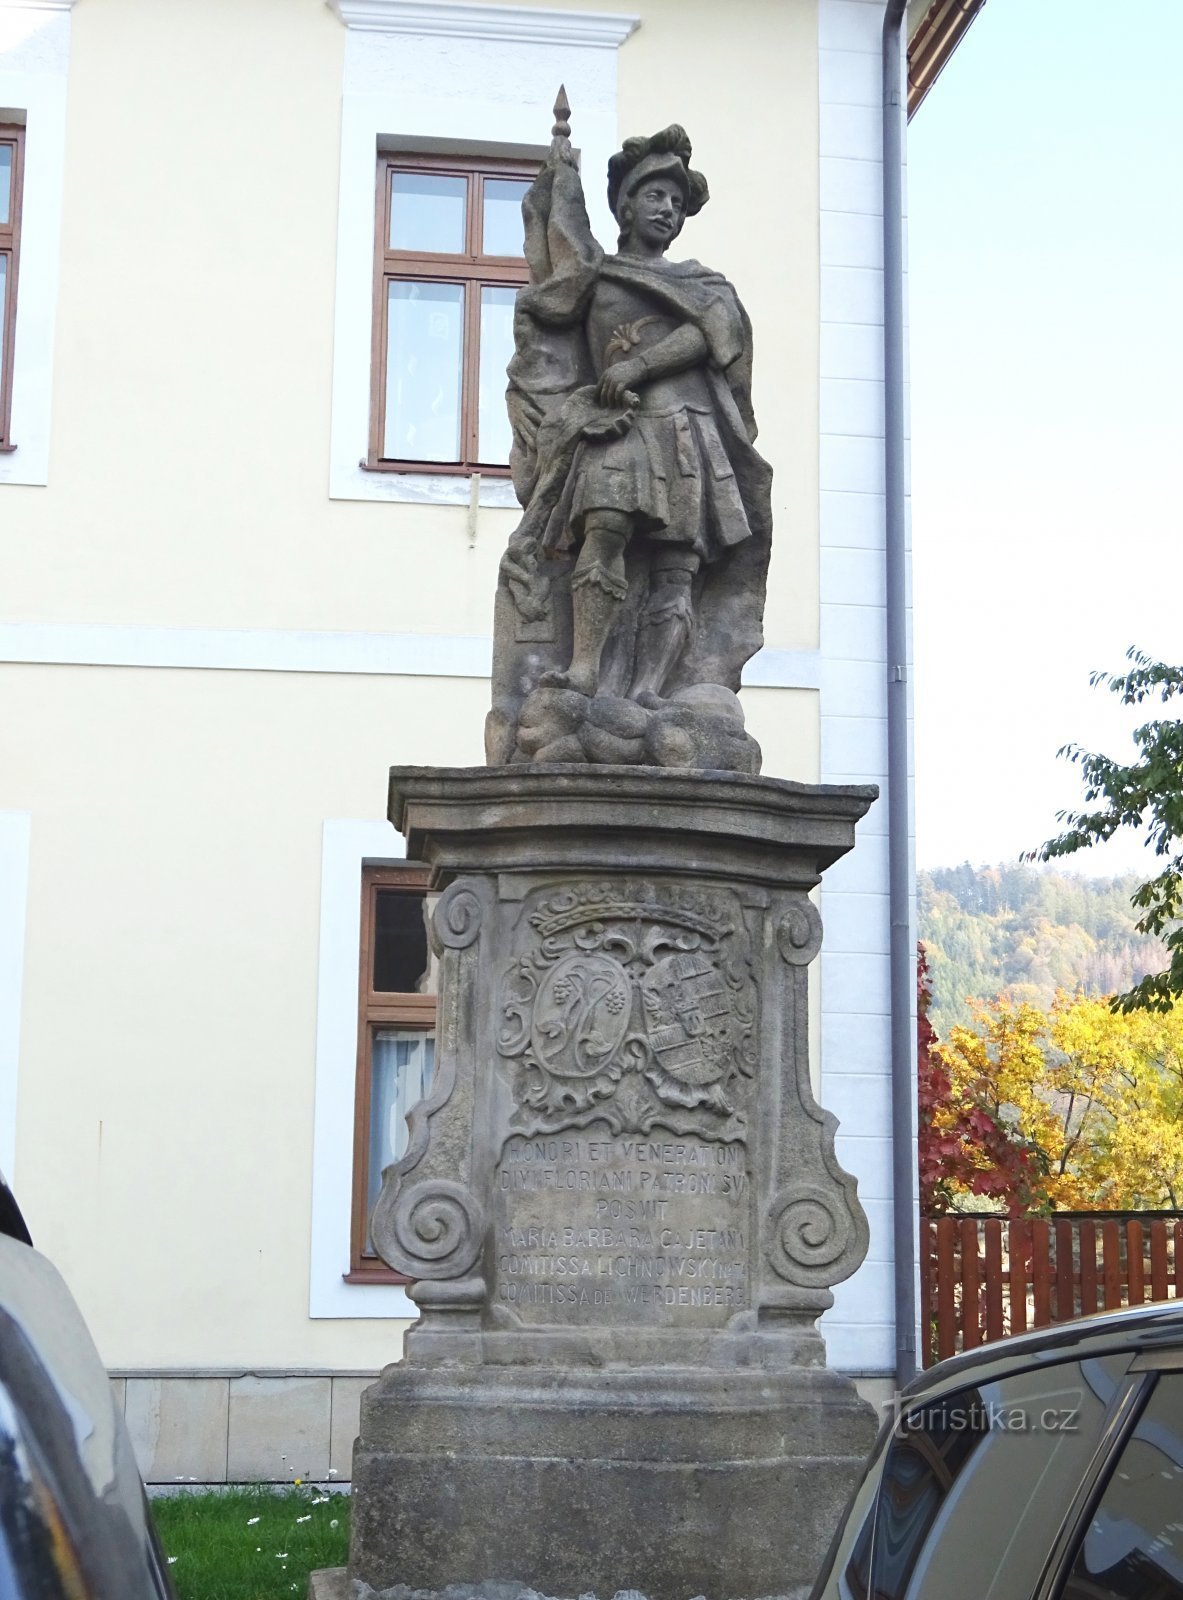 Odry - præstegårdsbygning og statue af St. Floriana